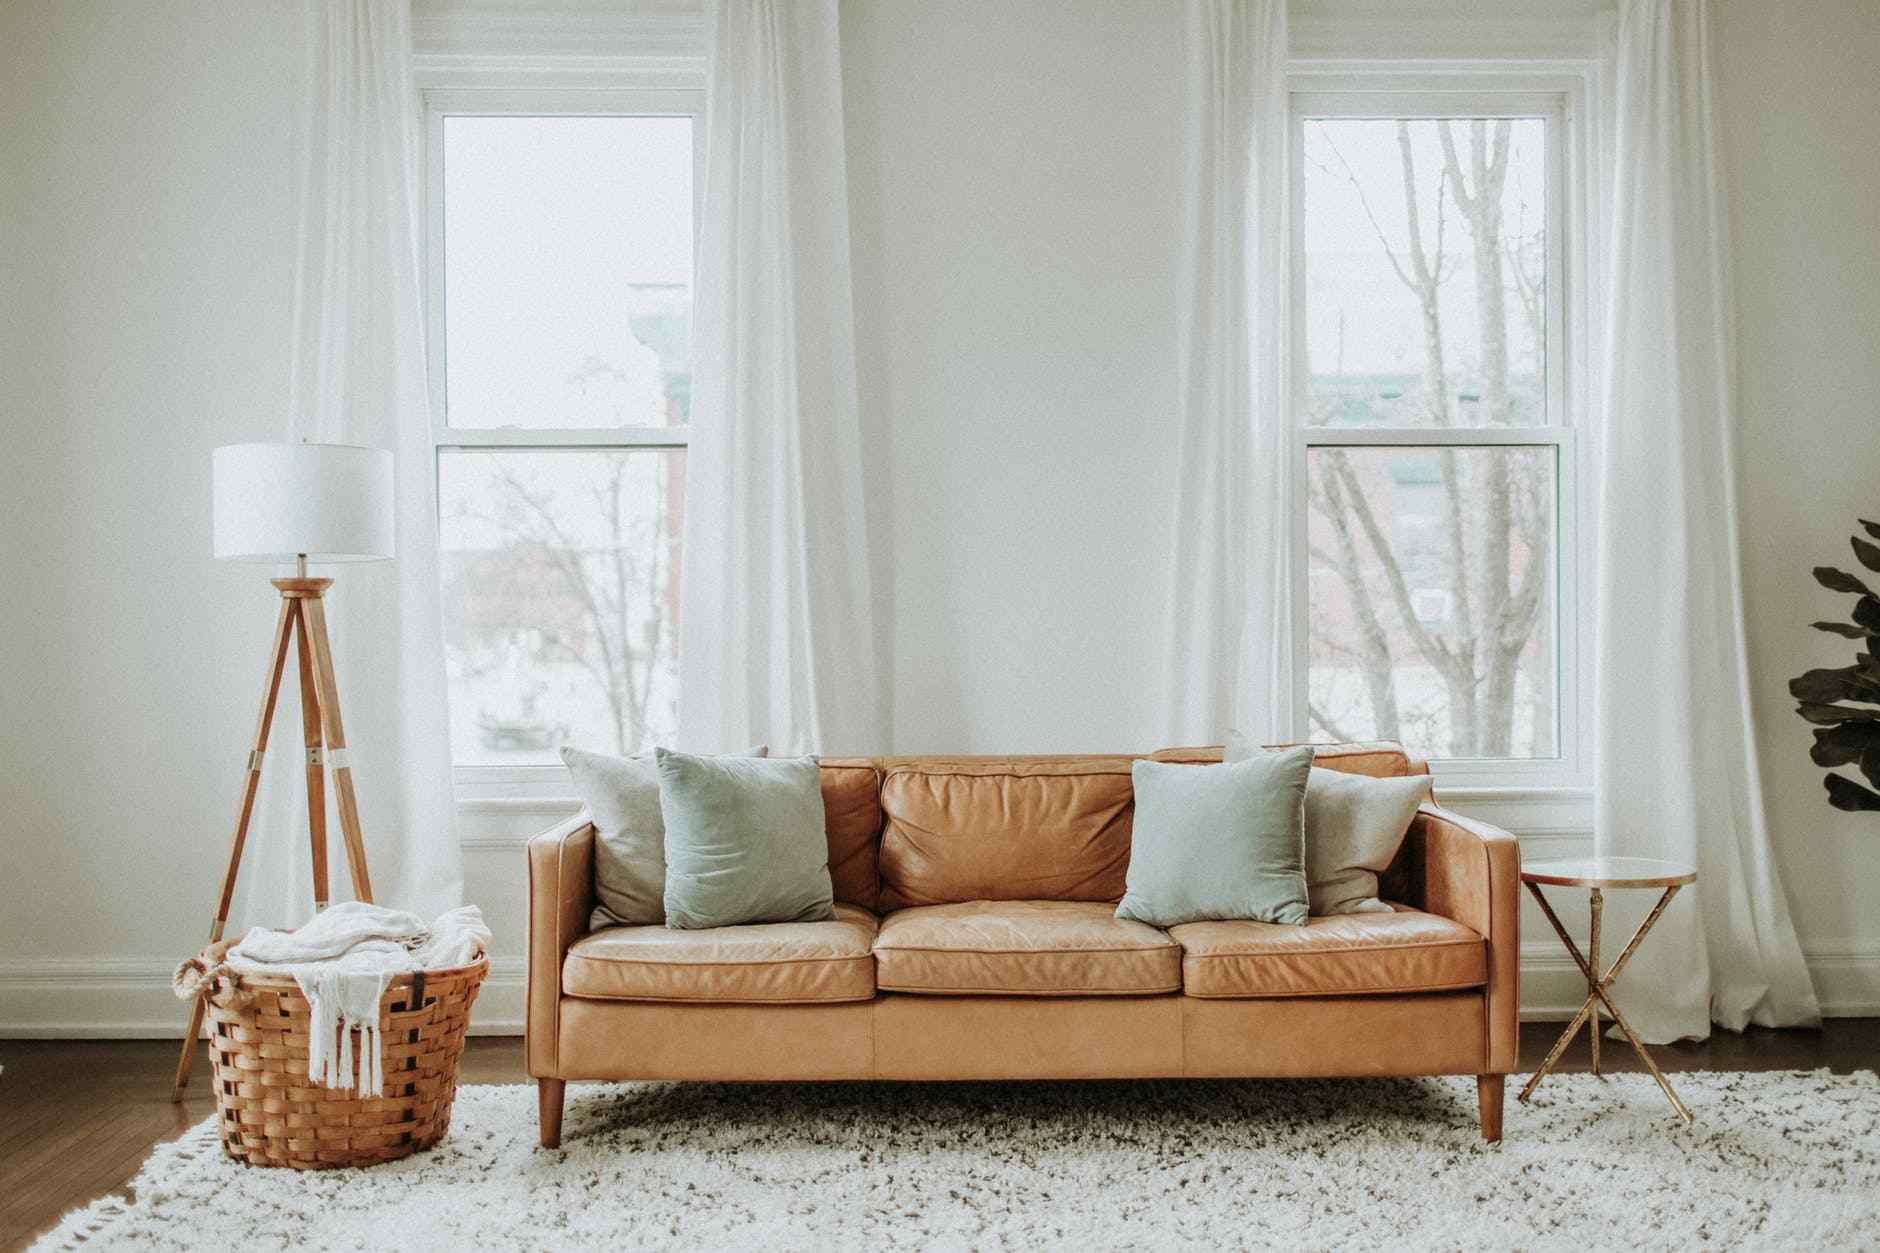 living Room Sofa Design